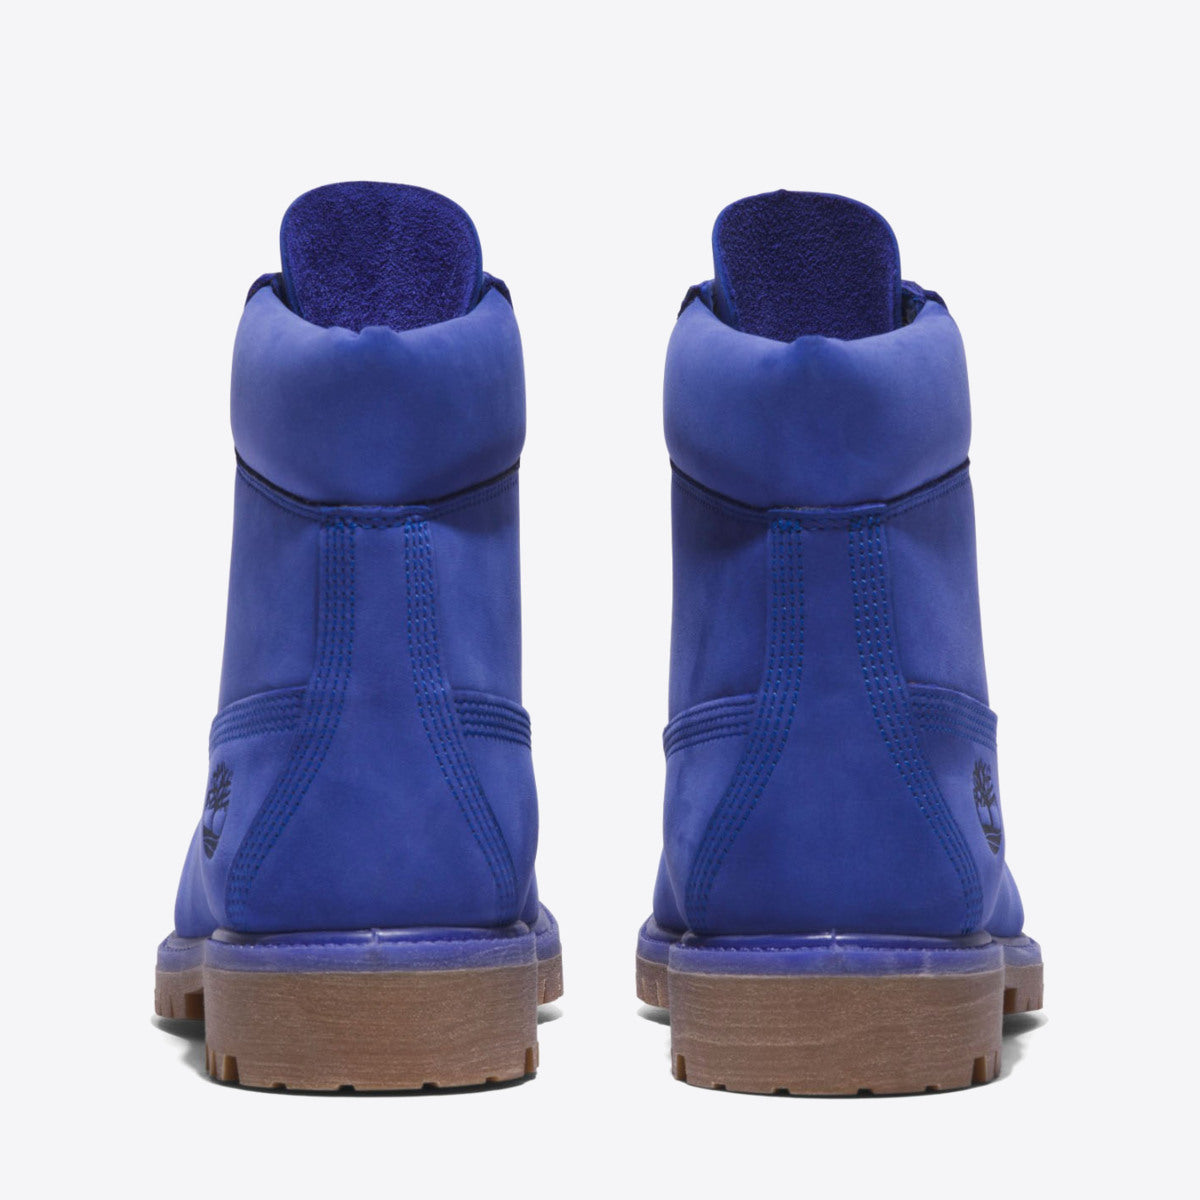 TIMBERLAND Mens 6-Inch Premium Waterproof Boot Bright Blue Nubuck - Image 5